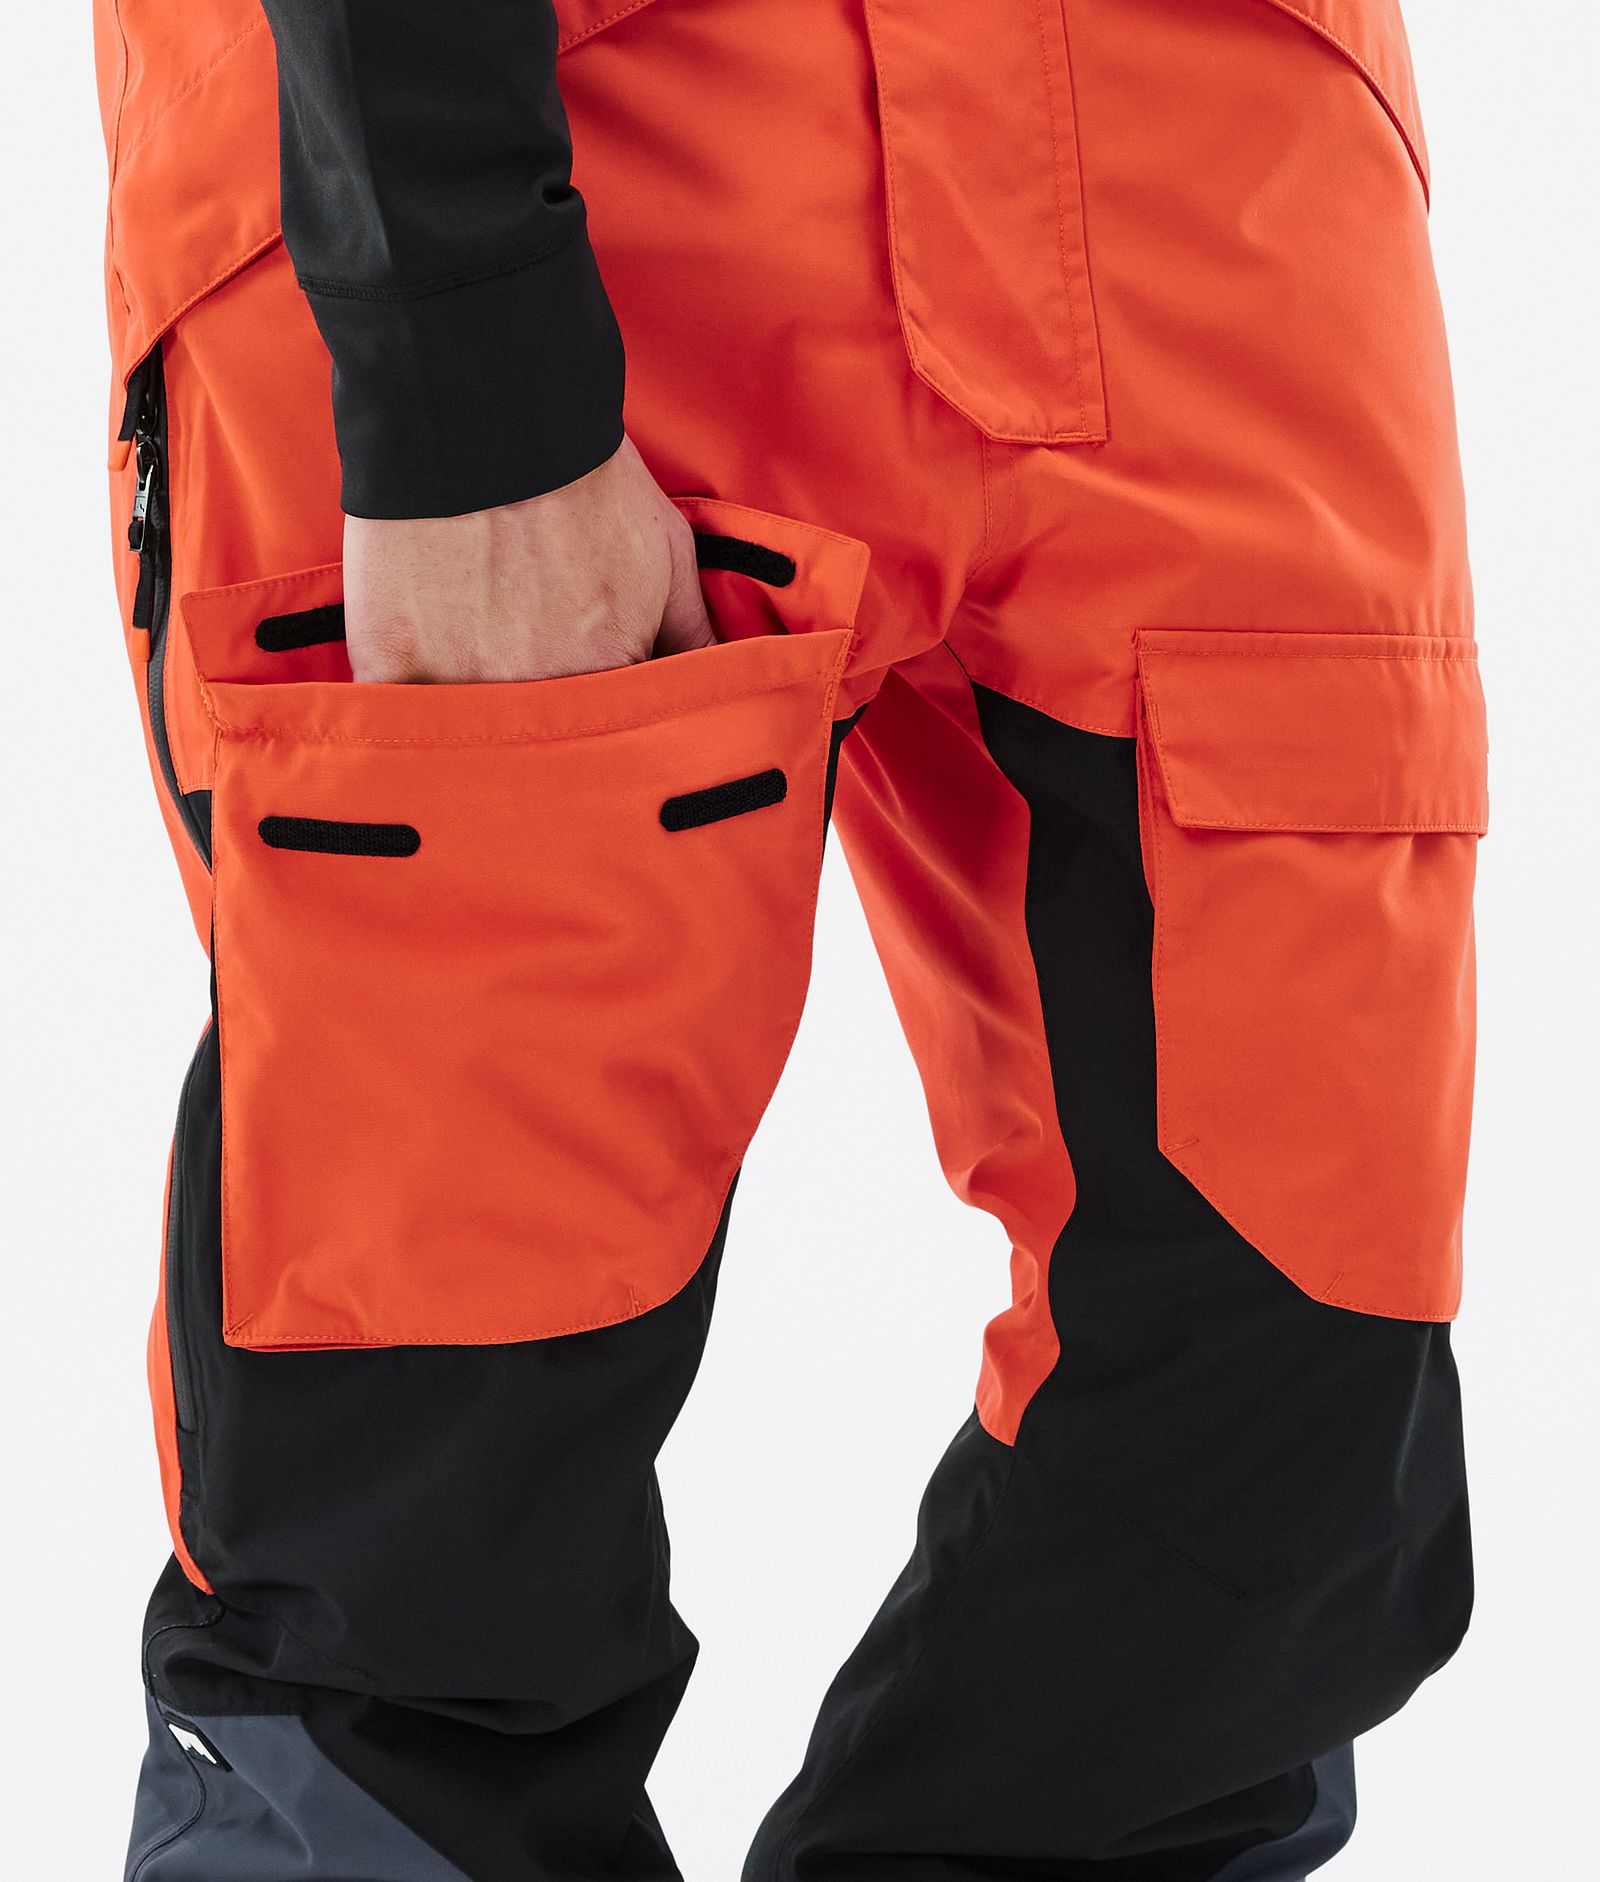 Montec Fawk Ski Pants Men Orange/Black/Metal Blue, Image 6 of 6